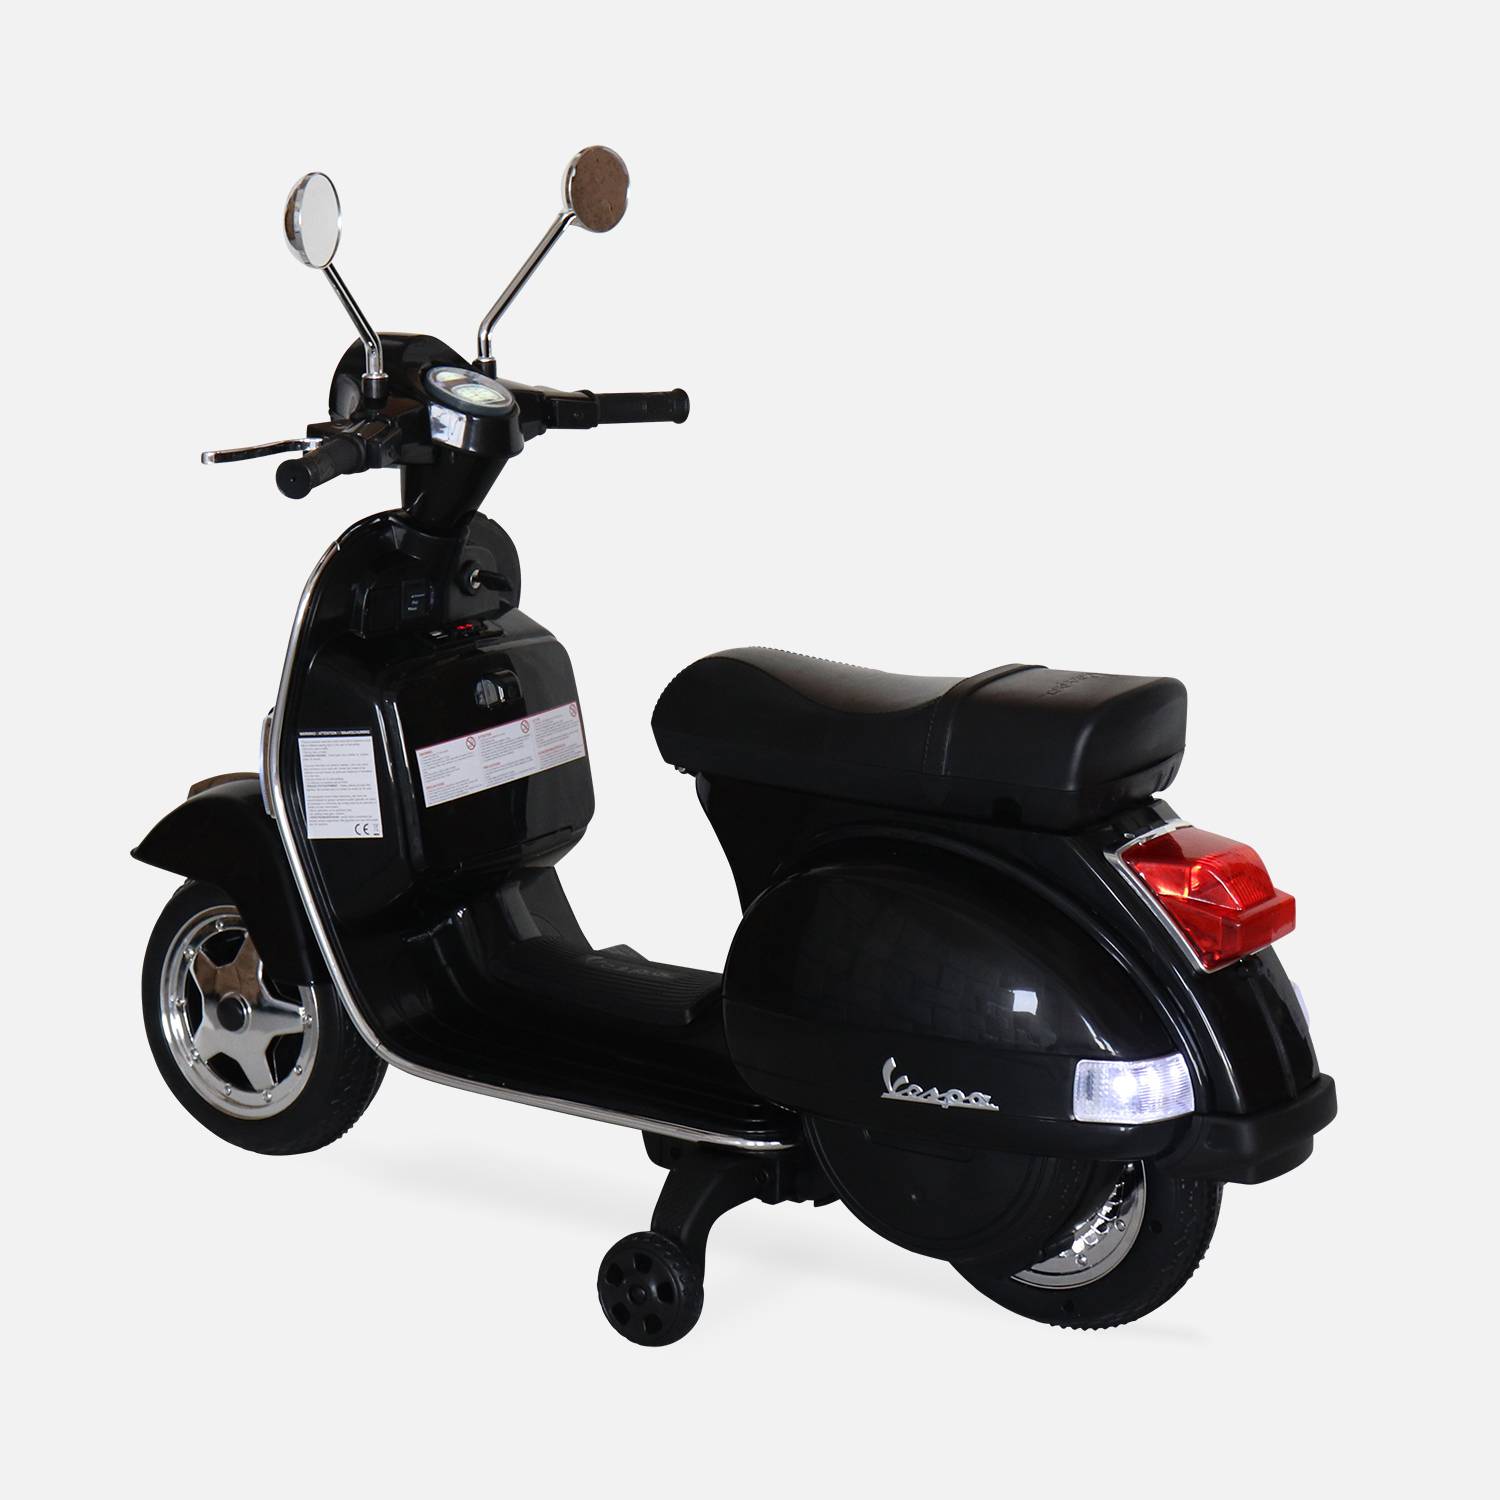 Zwarte Vespa PX150, elektrische scooter voor kinderen 12V 4.5Ah, 1 plaats met radio Photo2